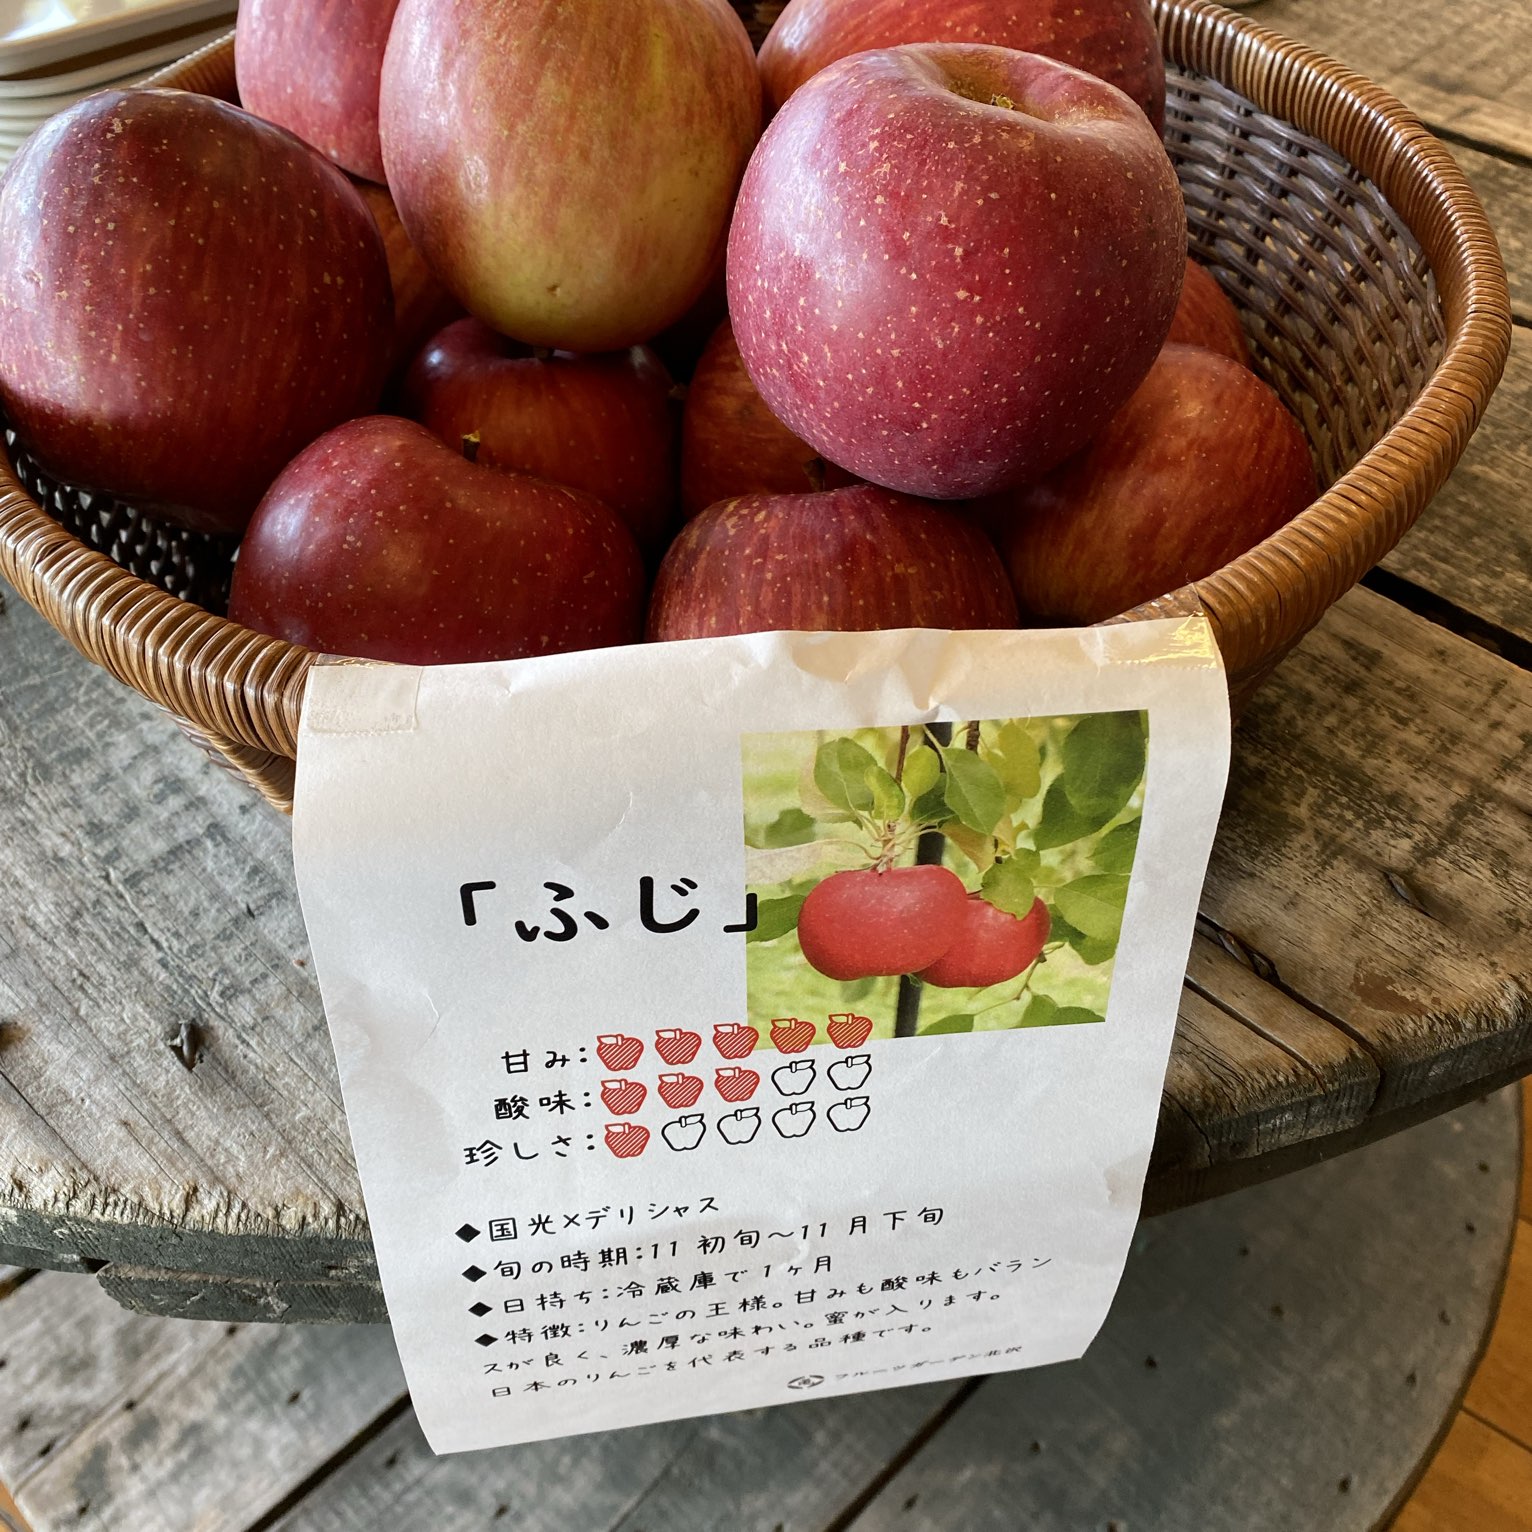 旬の果物と自家製シードル Trip Com 松川町の旅のブログ